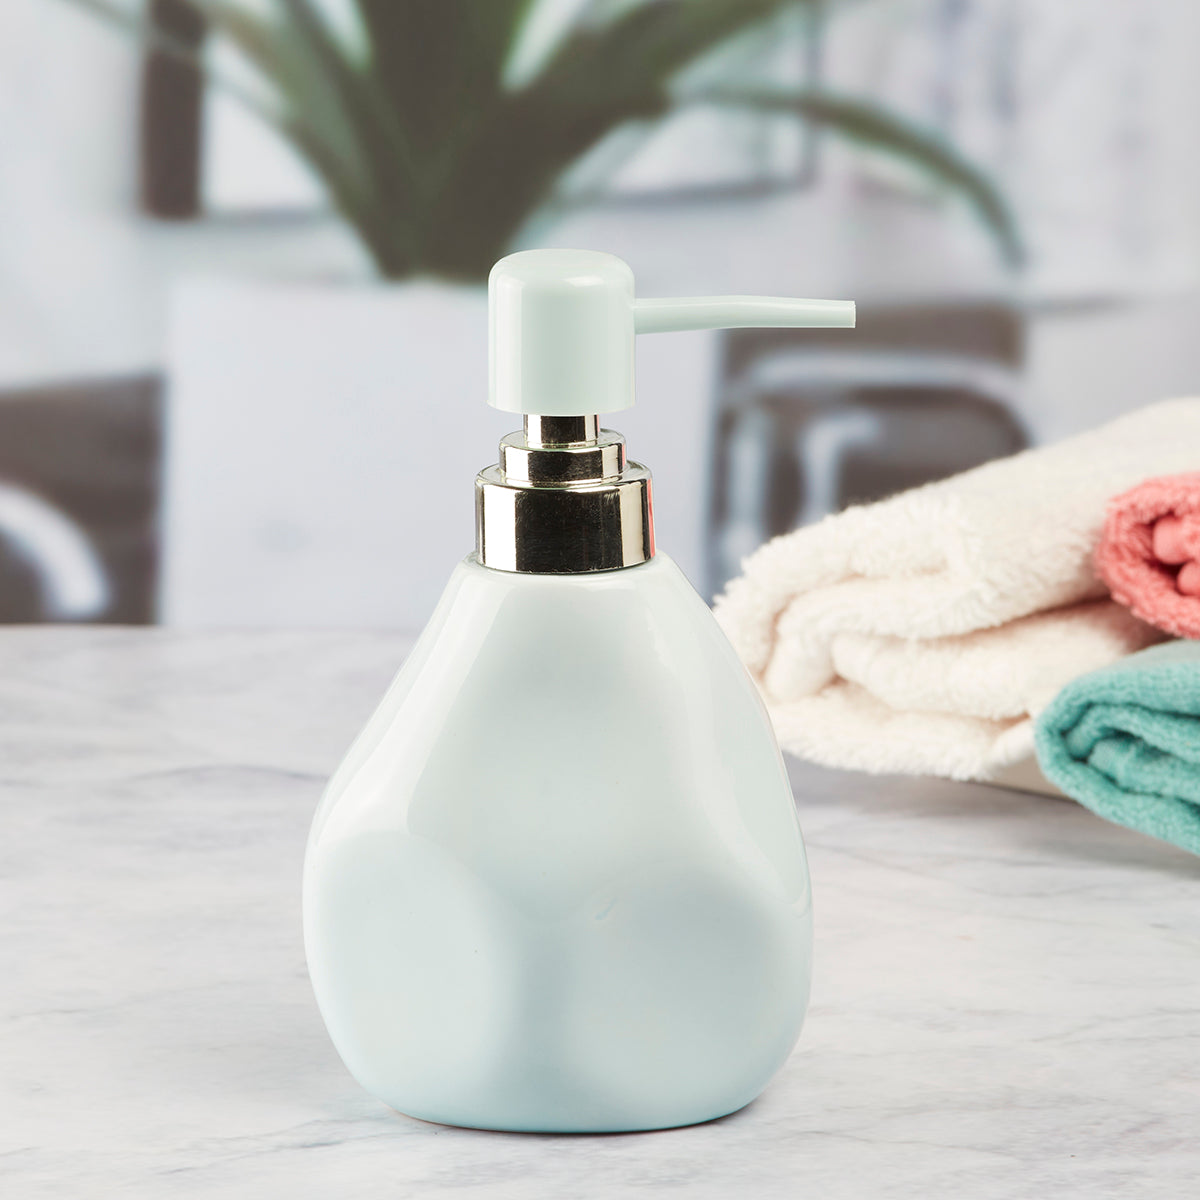 Kookee Ceramic Soap Dispenser for Bathroom handwash, refillable pump bottle for Kitchen hand wash basin, Set of 1, Blue (7631)